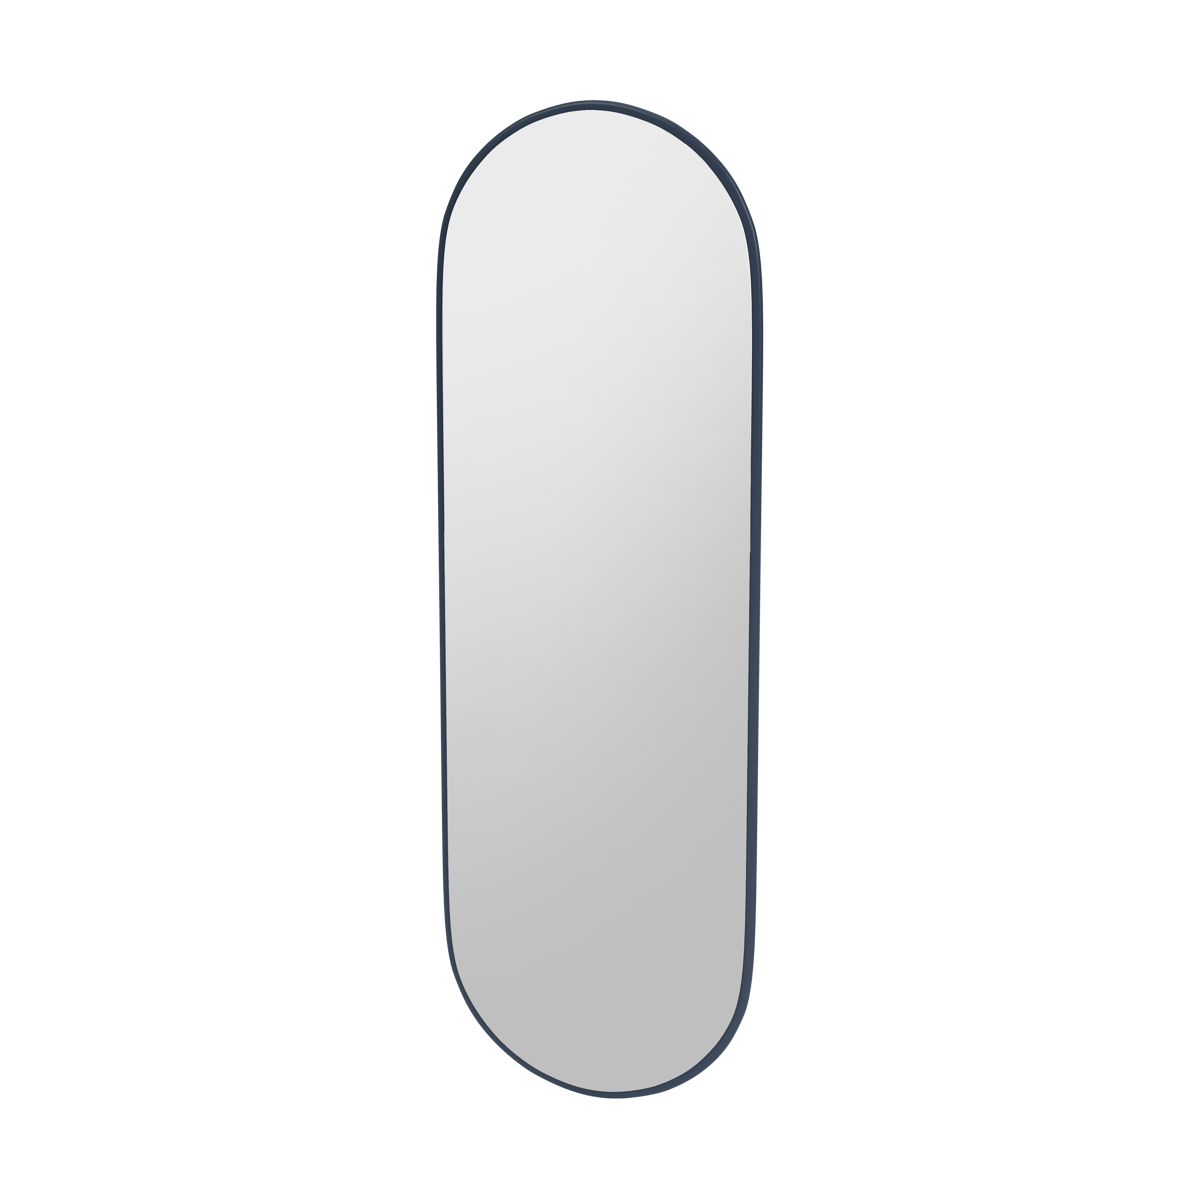 Montana FIGUUR Mirror Spiegel - SP824R Juniper